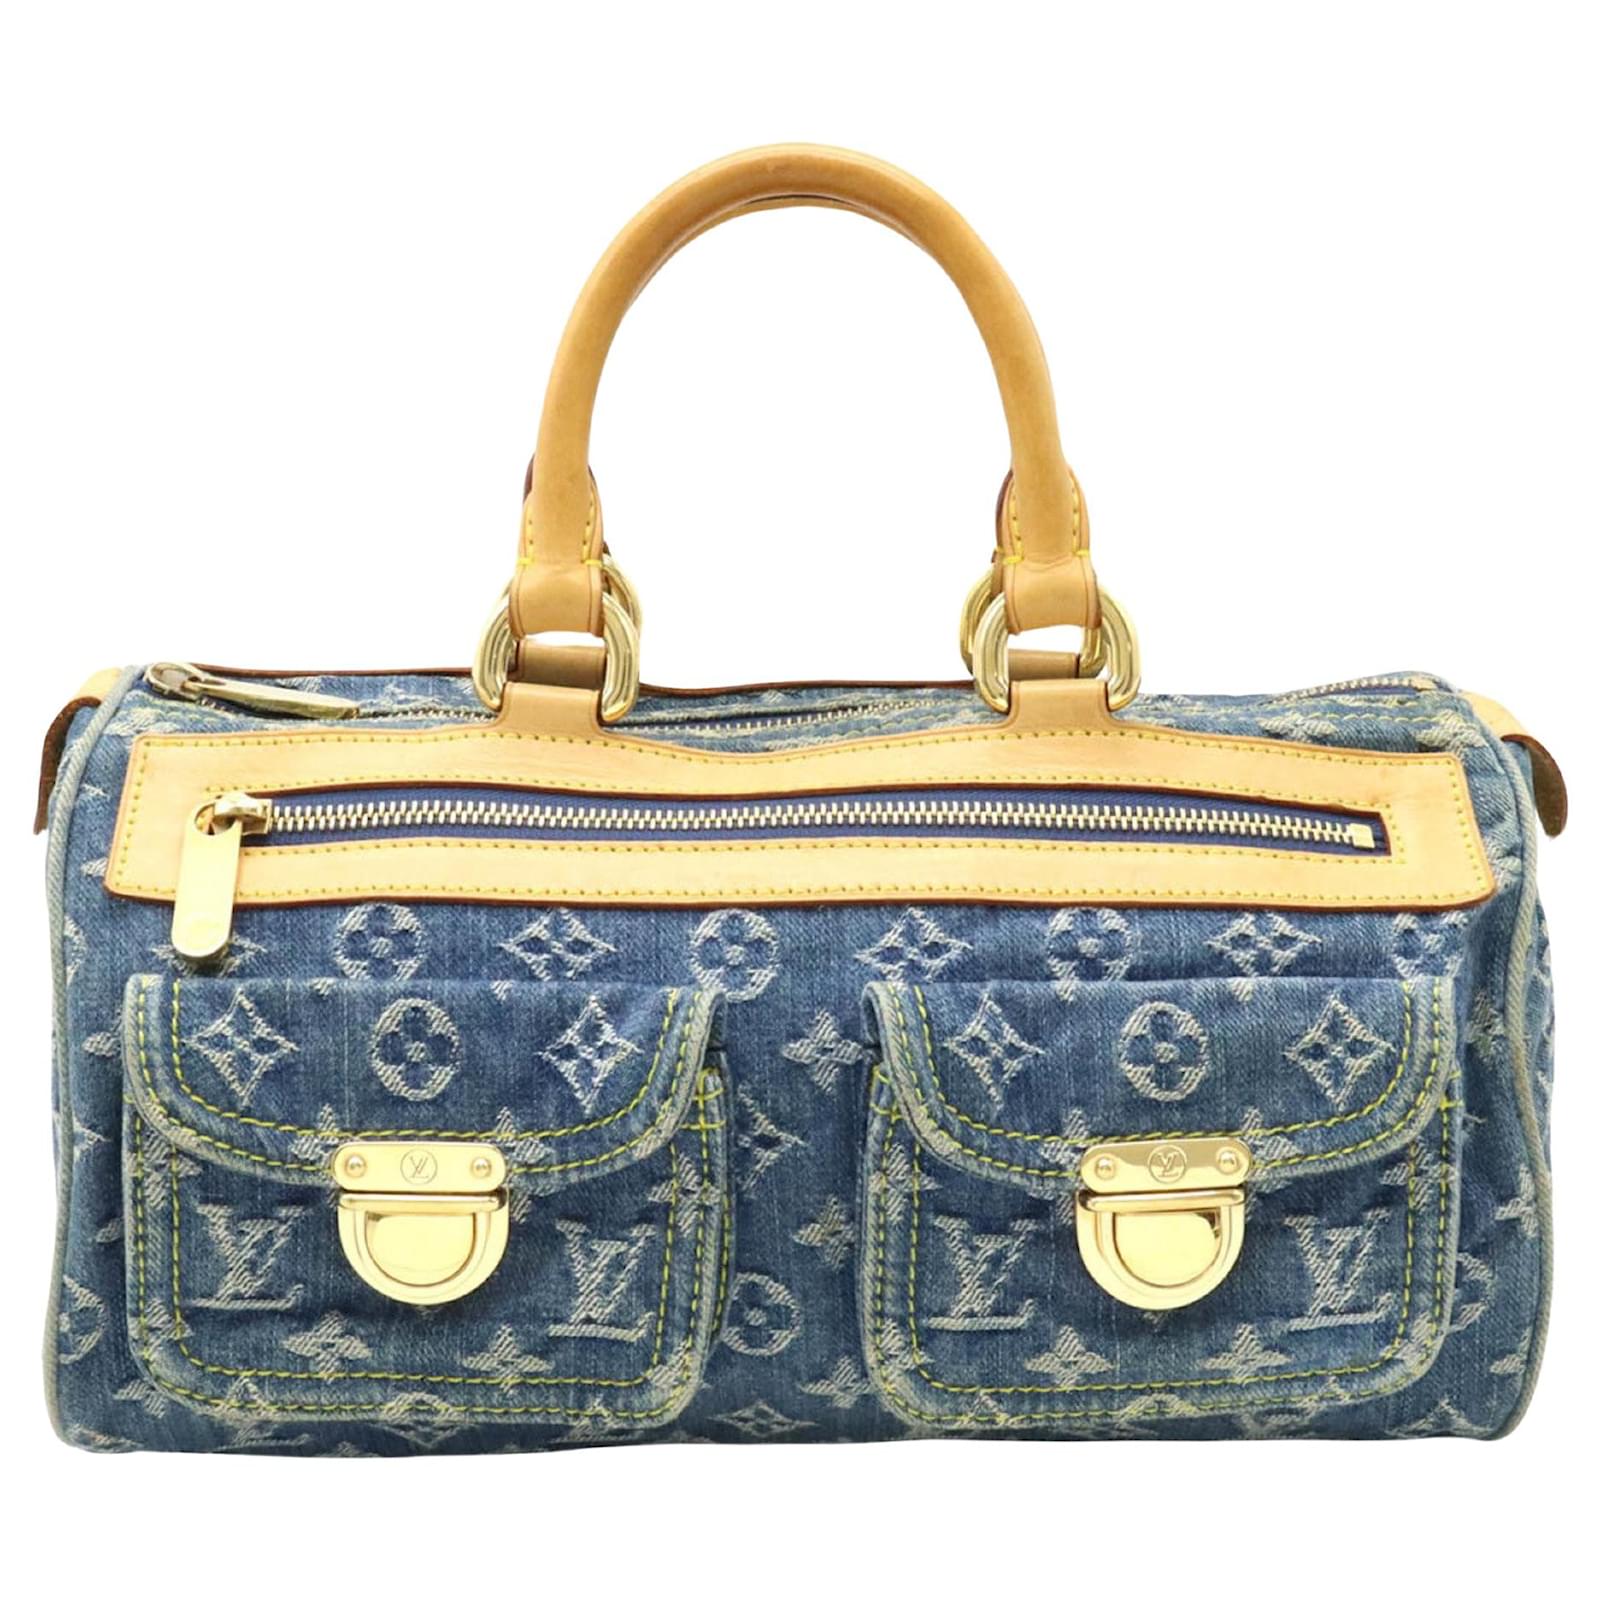 Auth Louis Vuitton Monogram Denim Neo Speedy M95019 Women's Handbag Blue